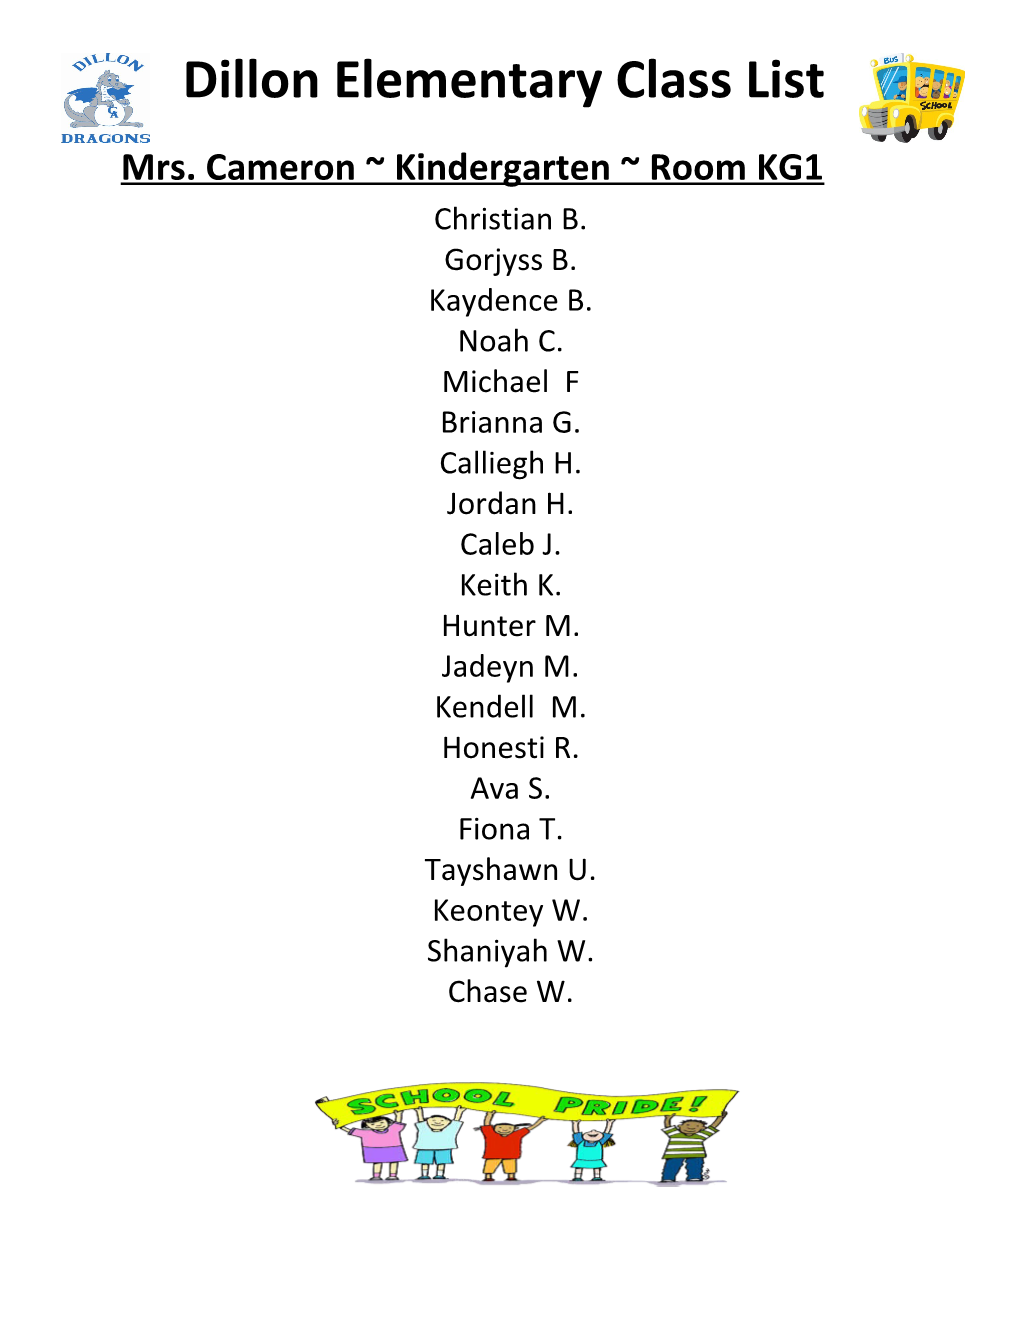 Mrs. Cameron Kindergarten Room KG1